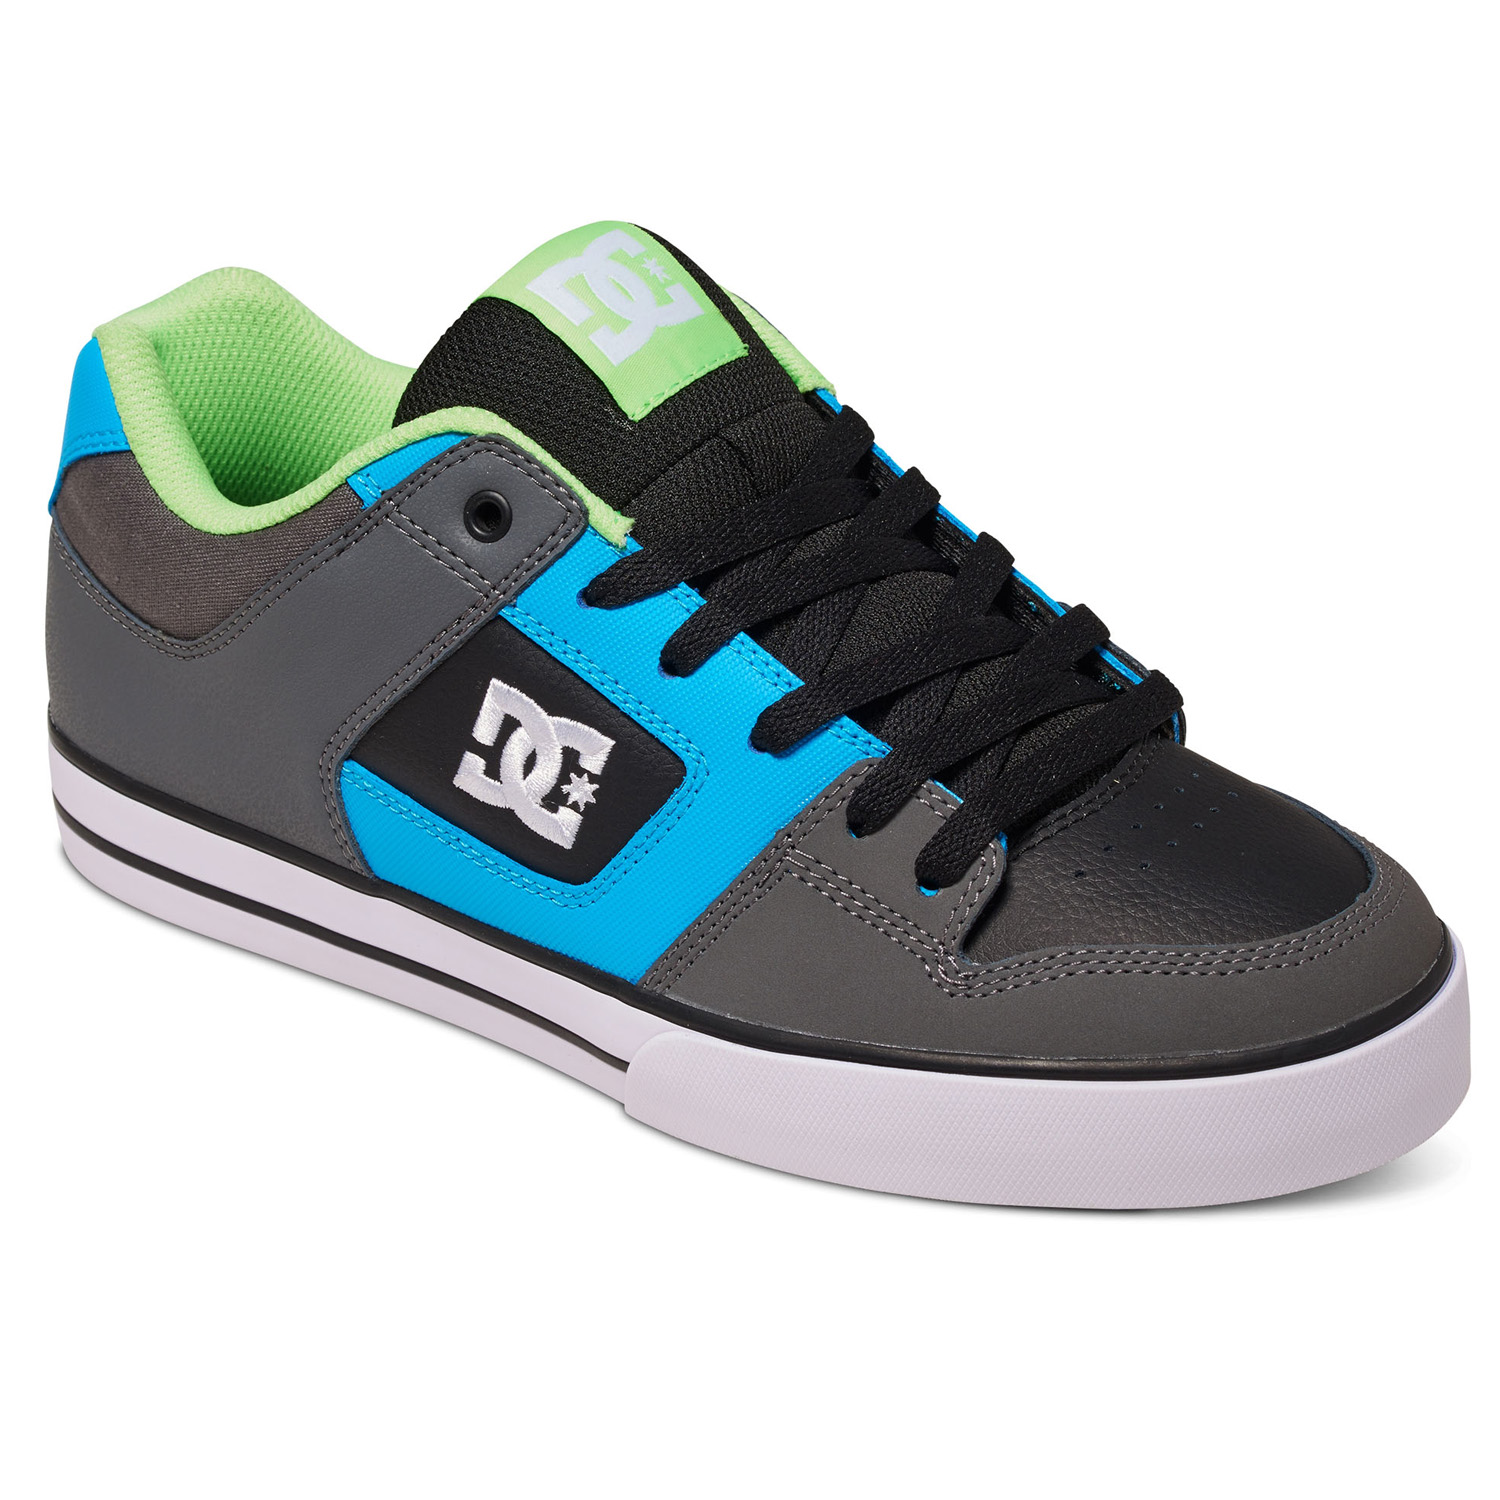 DC Schuhe Pure Grau/Grün/Blau